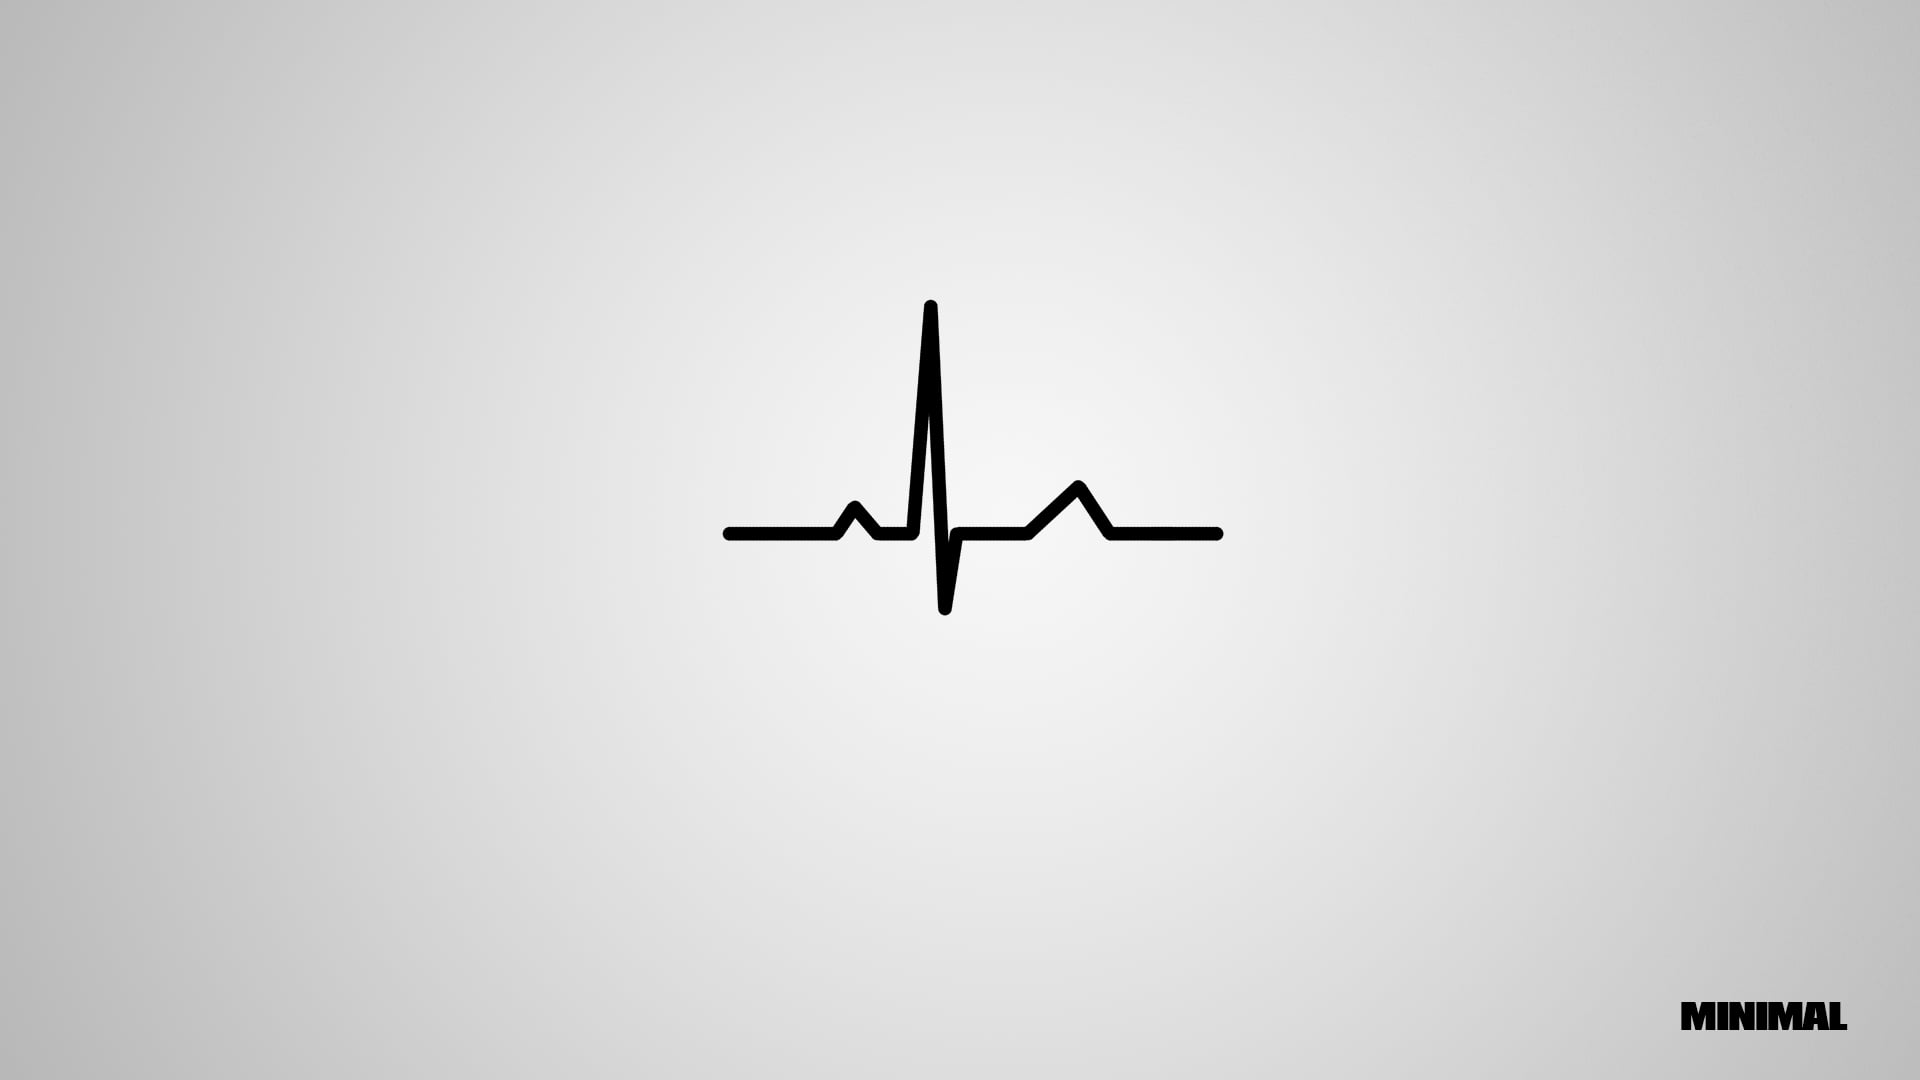 Minimal logo, heart beat digital wallpaper, minimalism, techno